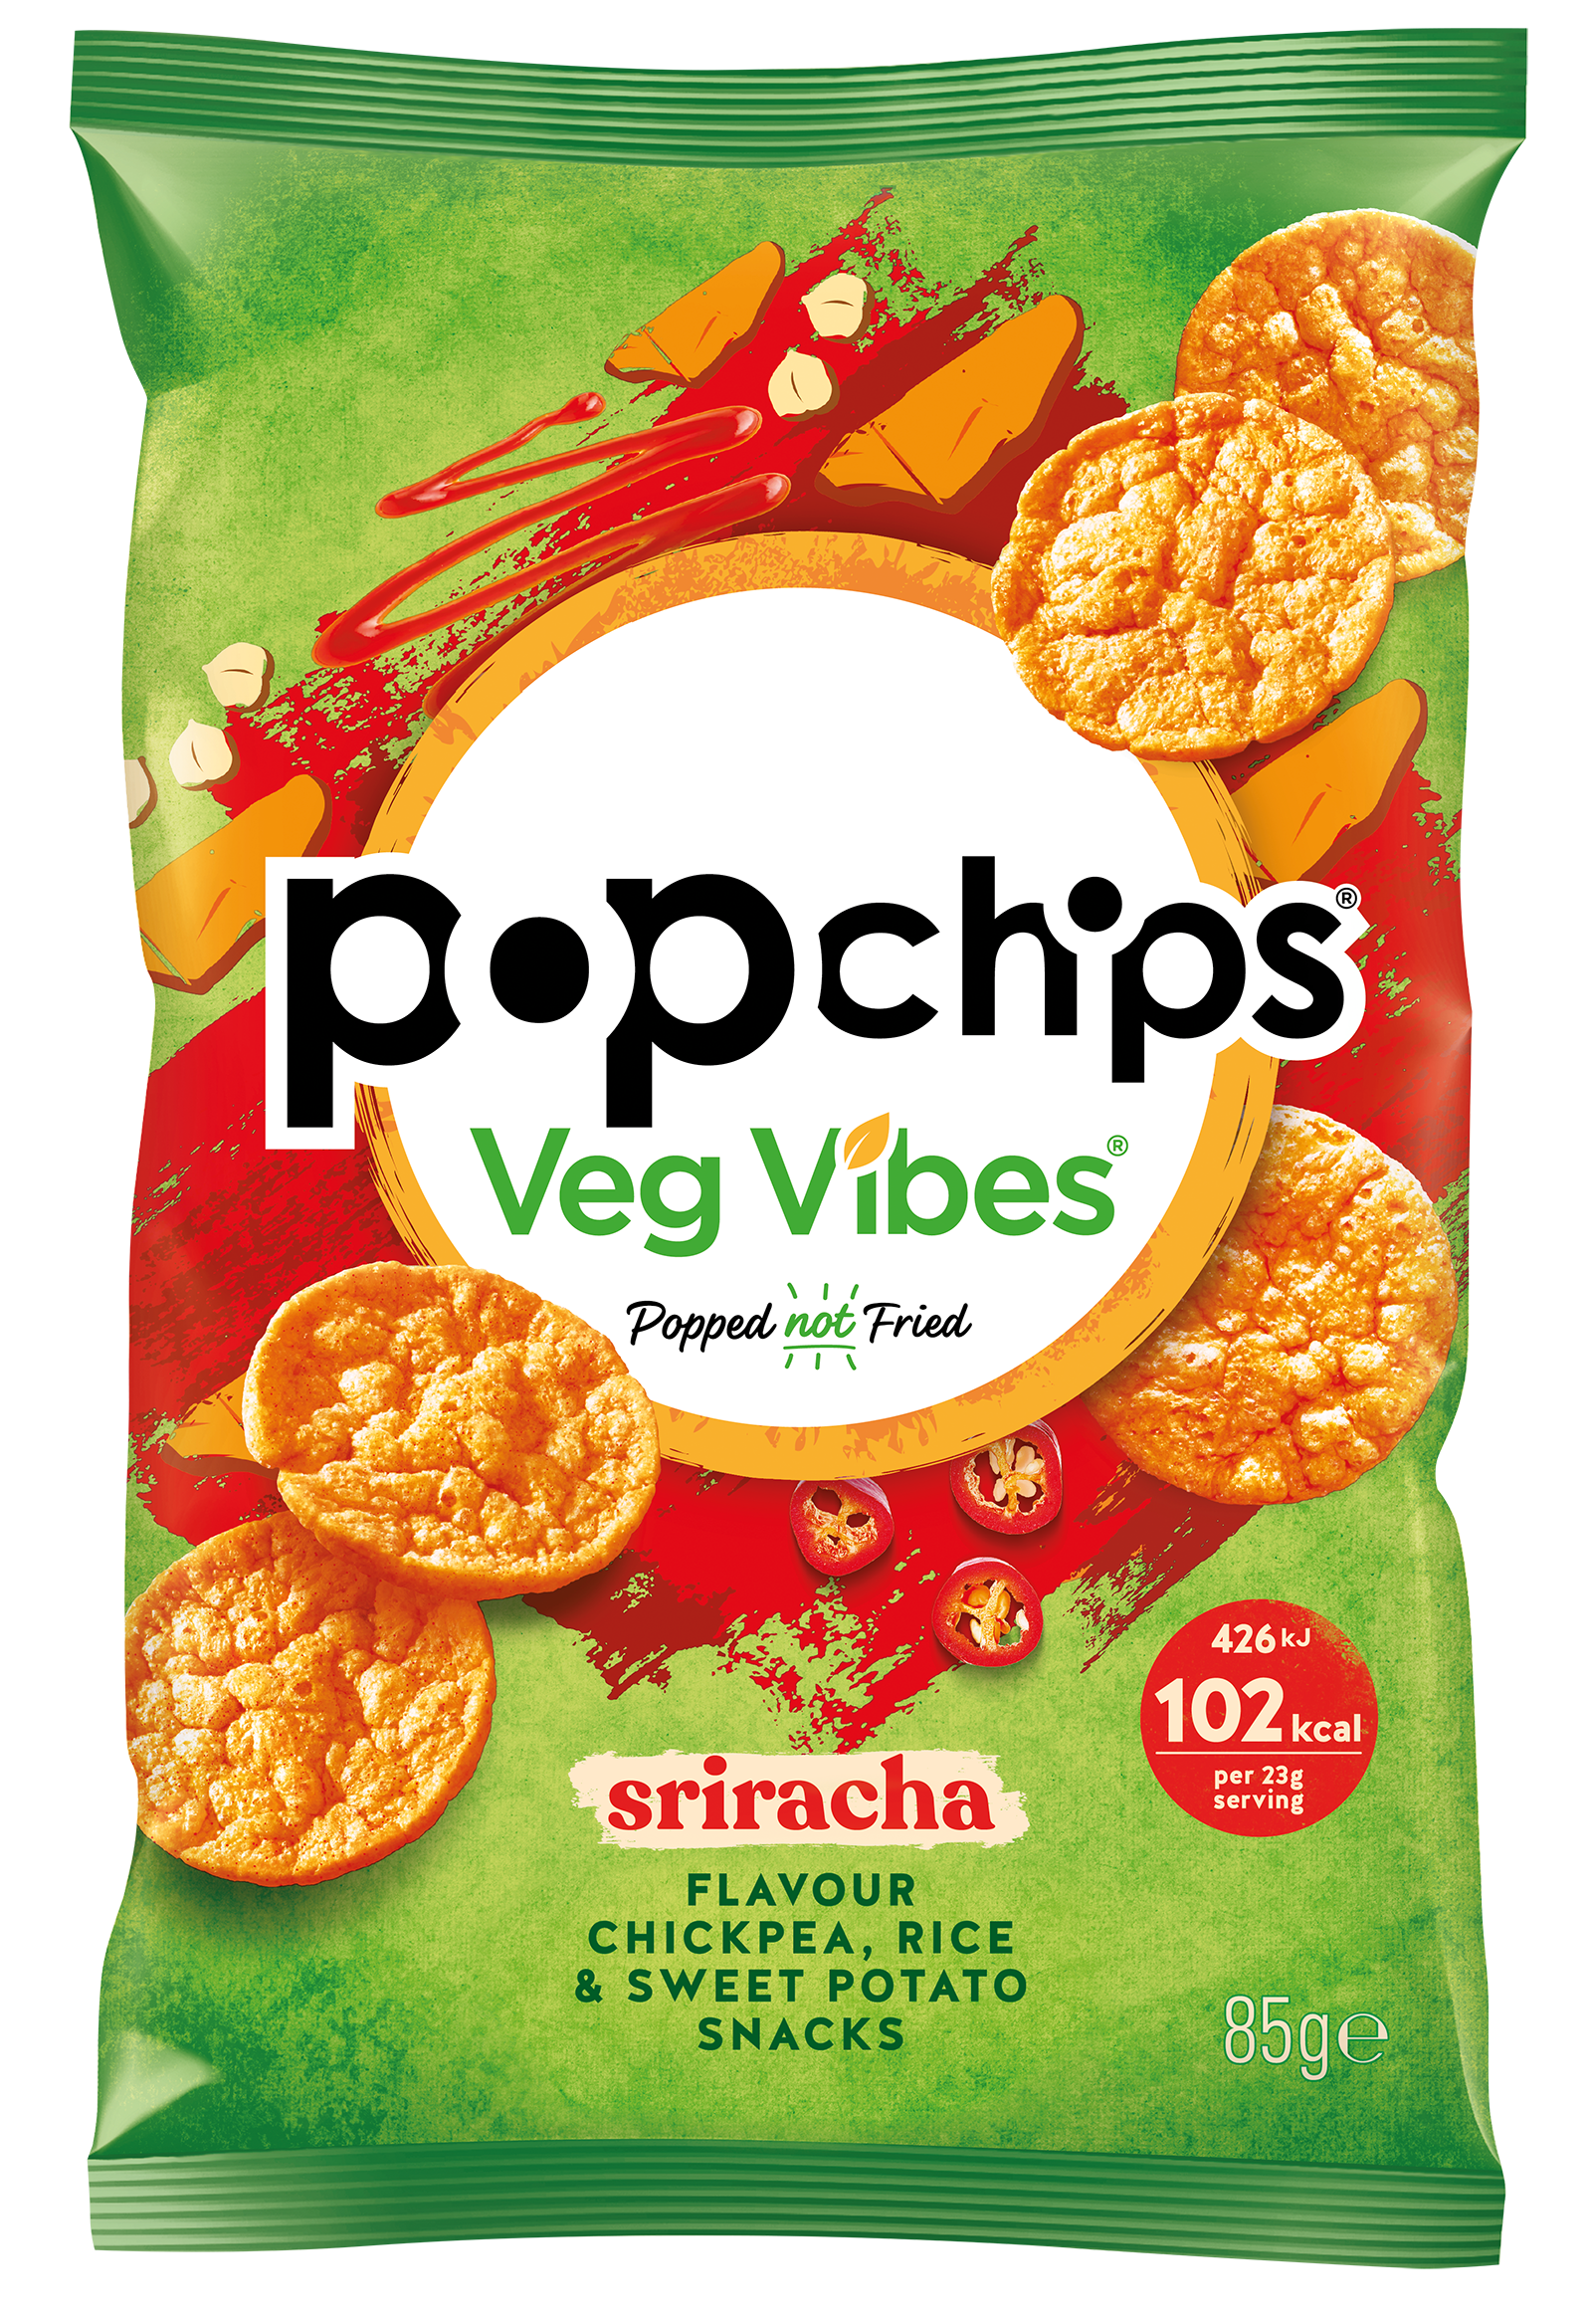 KP Snacks announces popchips Veg Vibes range